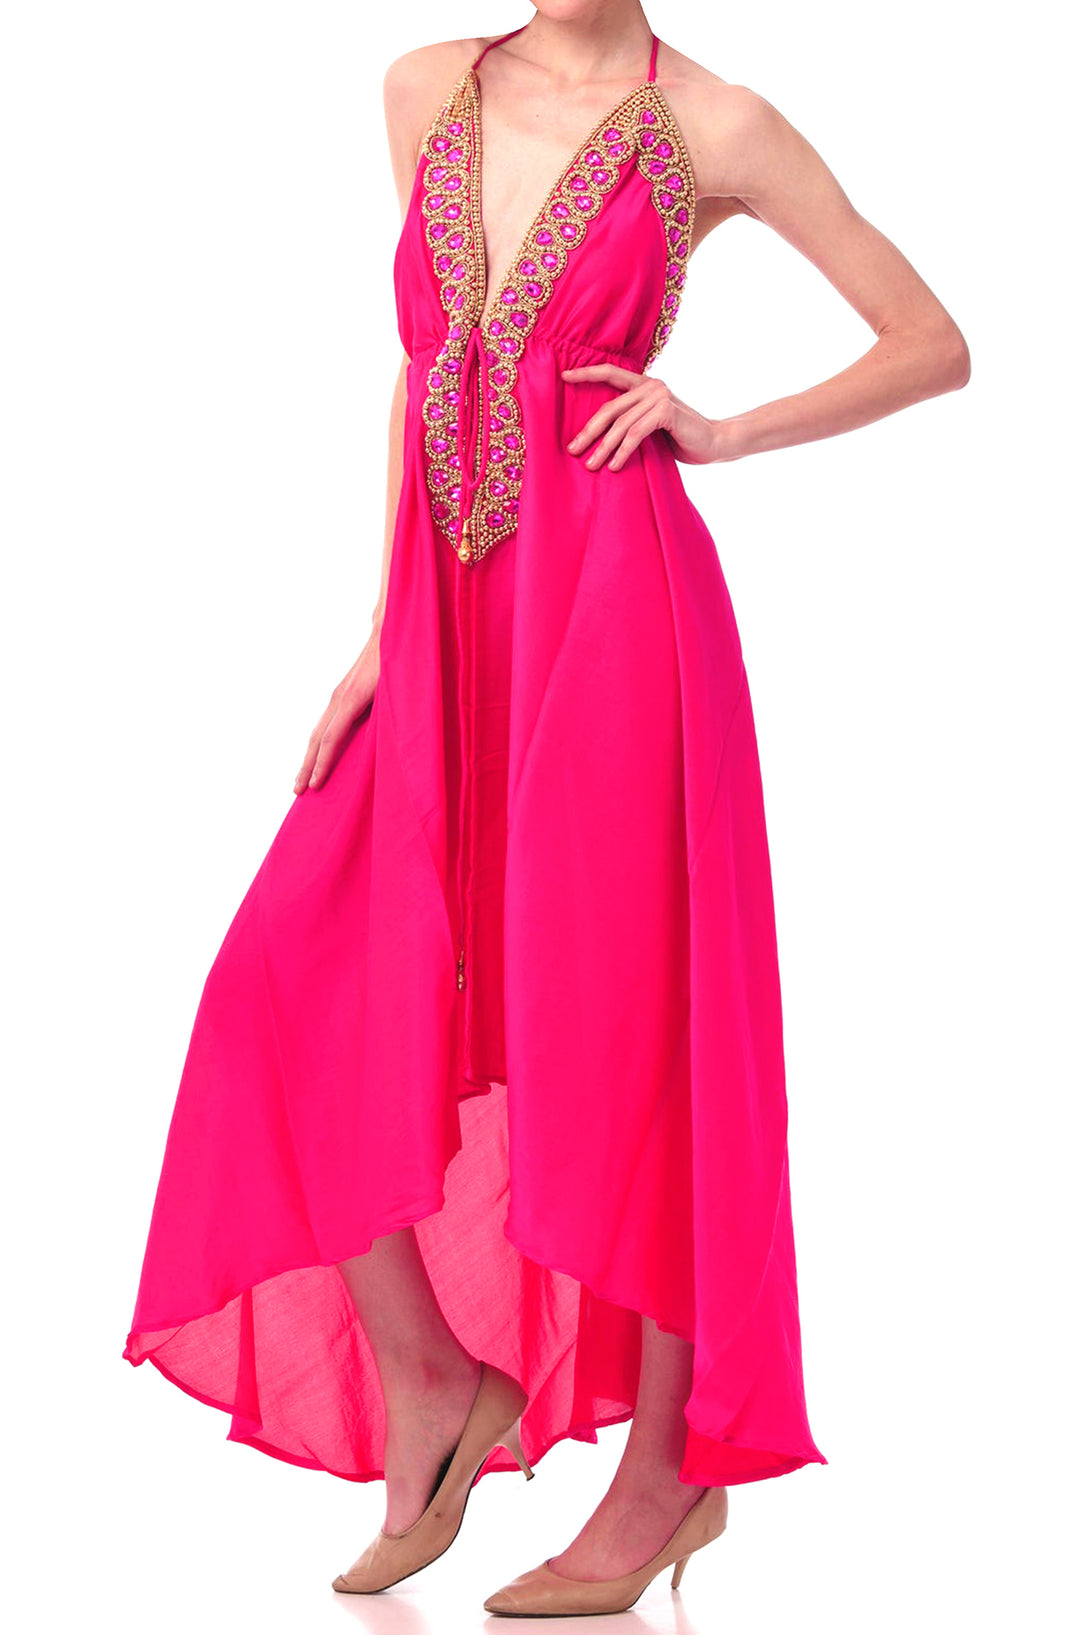  pink maxi dress women, long summer dresses for women, plunge neck cocktail dress,